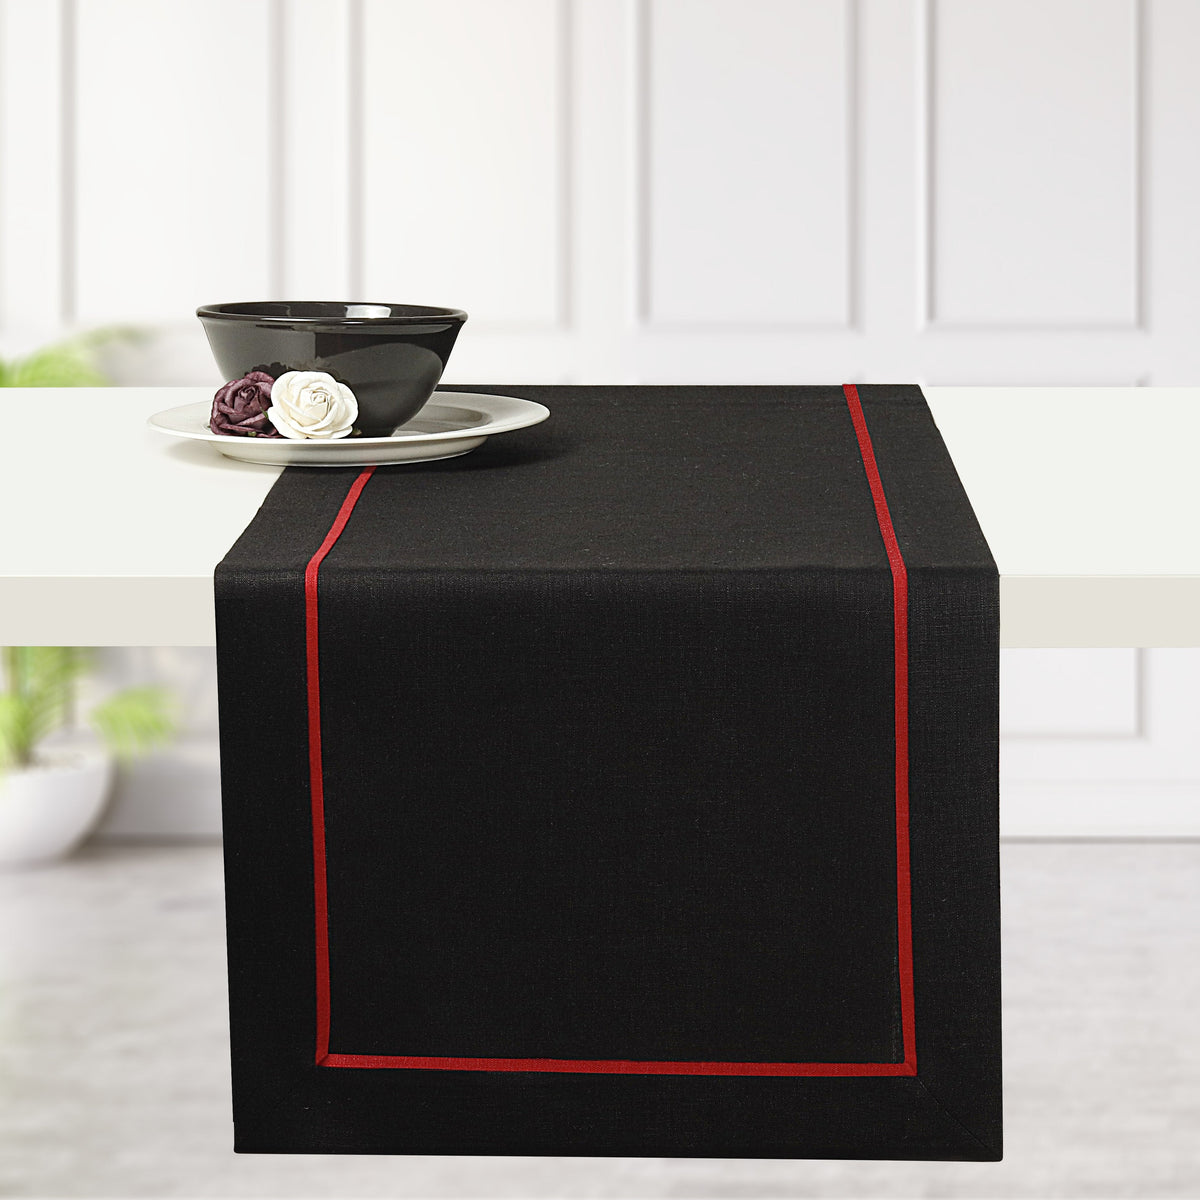 Black & Red Linen Table Runner - Reversible